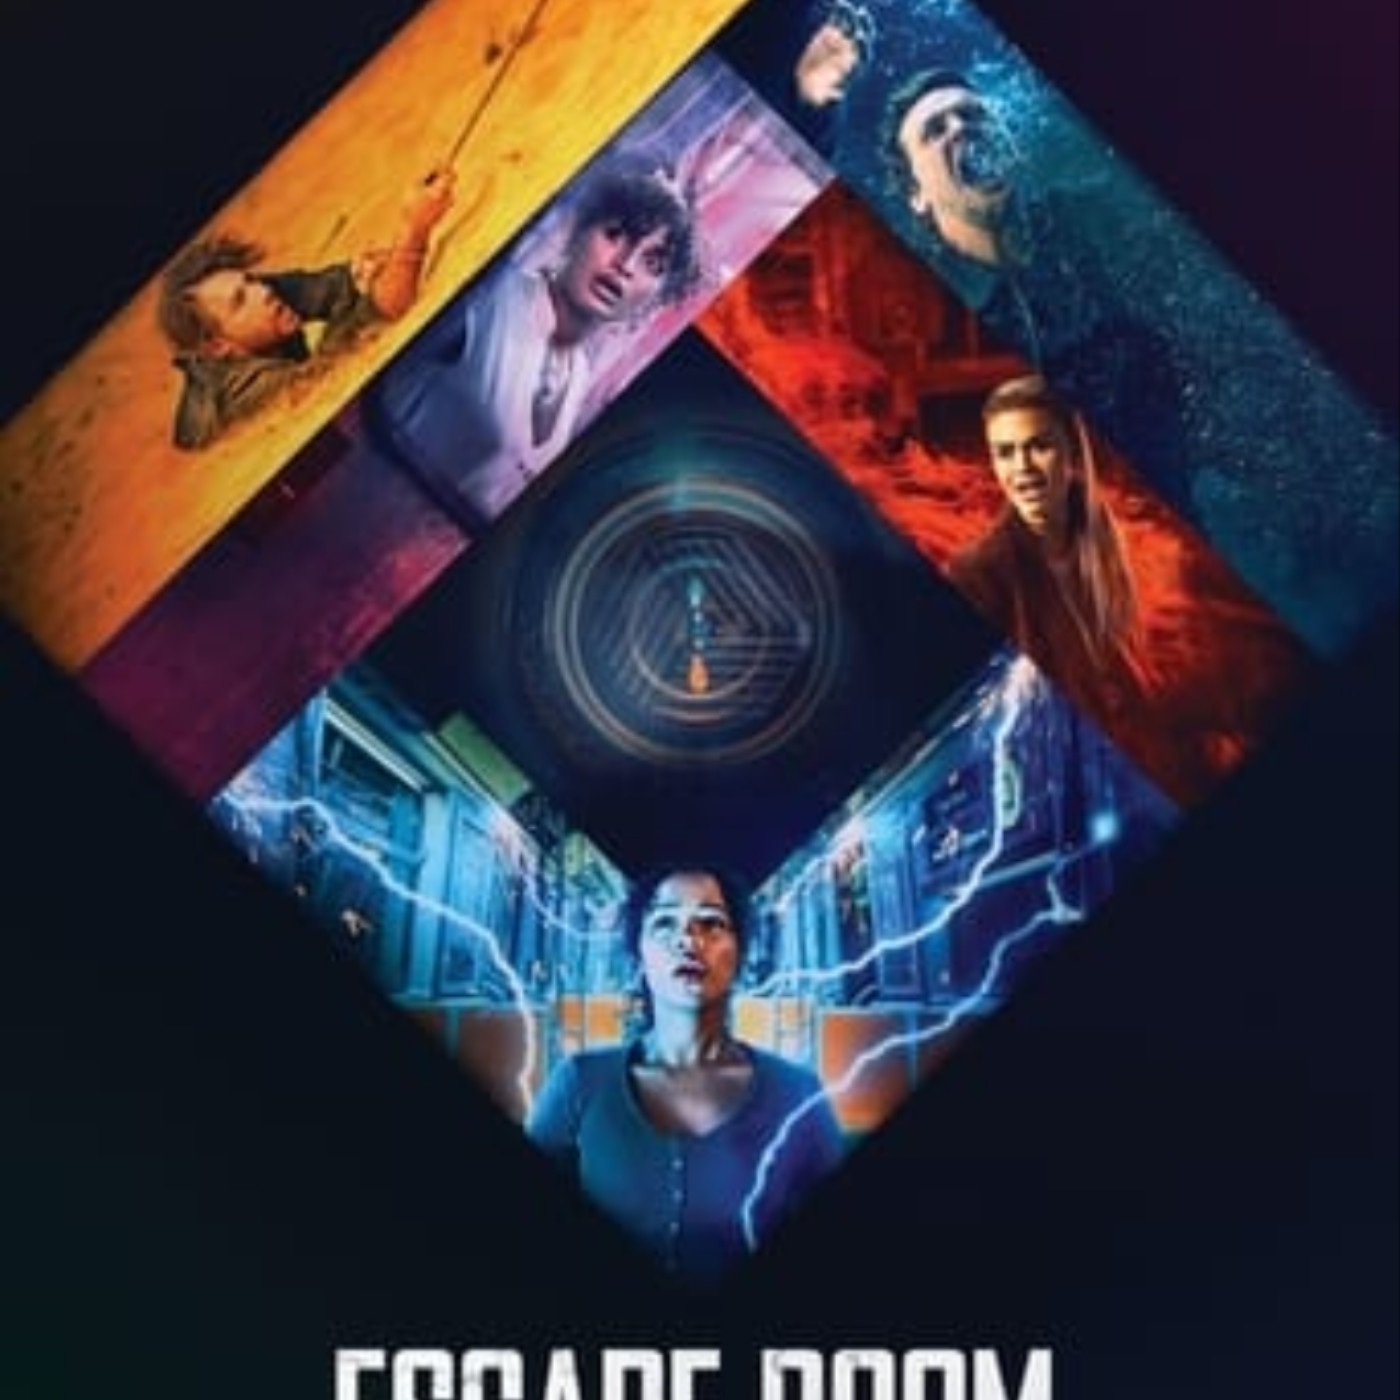 Ver Escape Room 2: Mueres por salir 2021 online gratis en español y latino  | Podcast on SoundOn